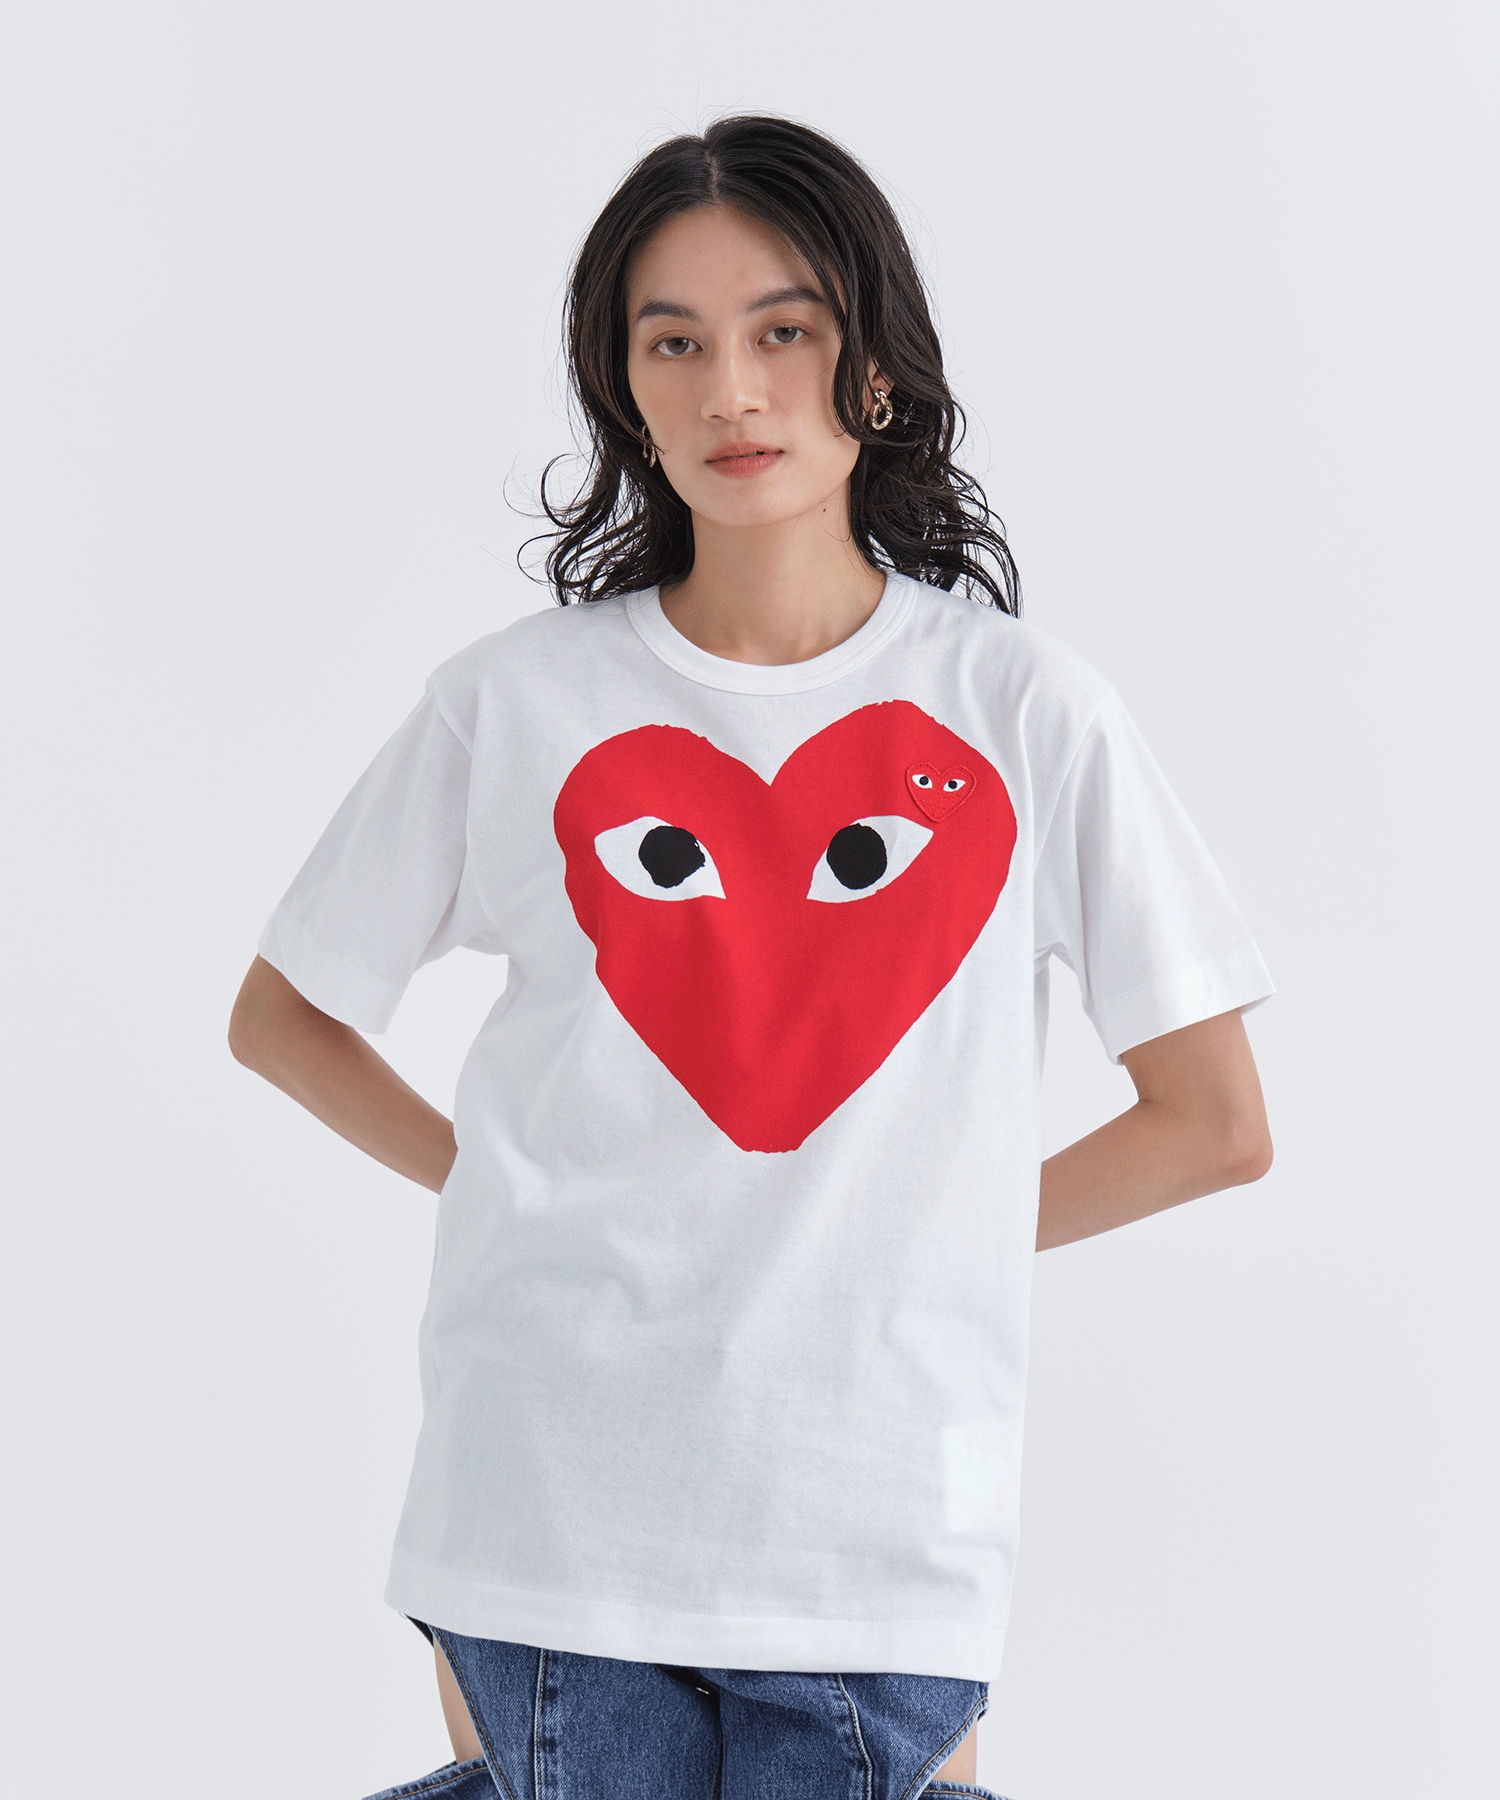 T-SHIRT RED EMBLEM RED HEART